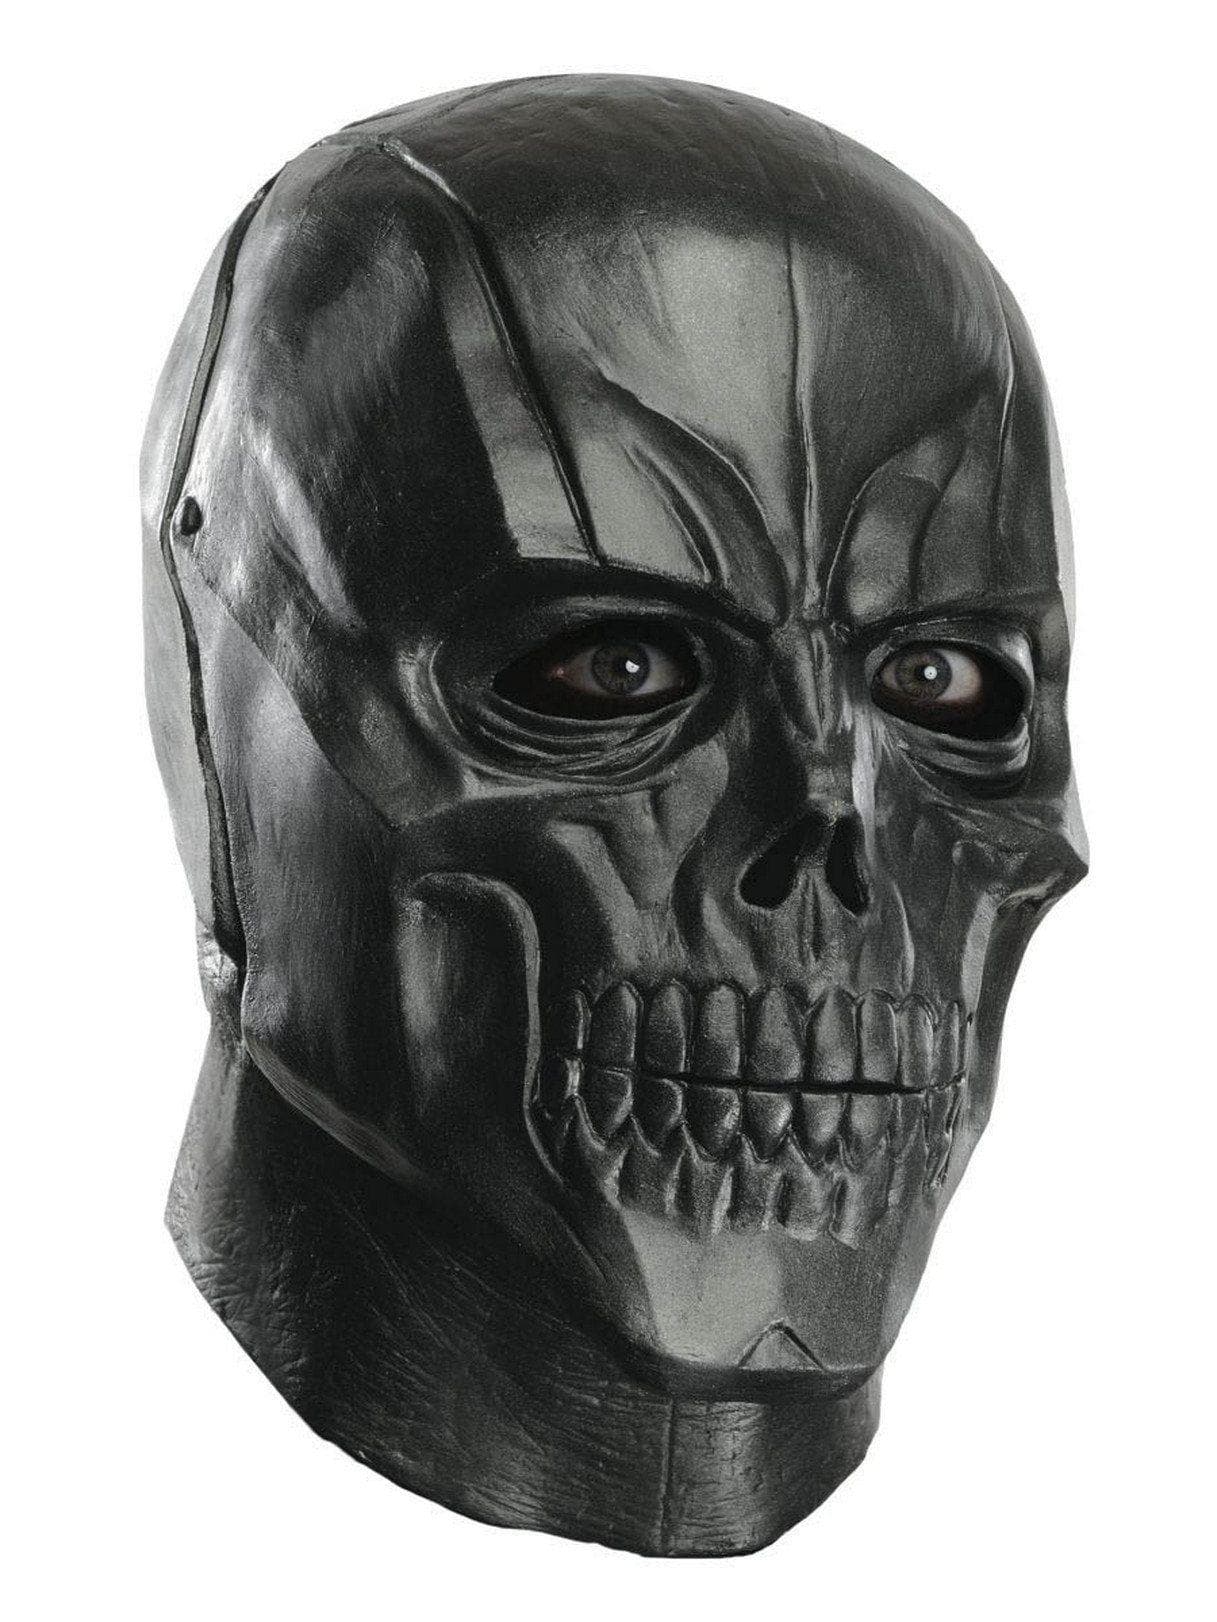 Adult Batman: Arkham City Black Mask - costumes.com